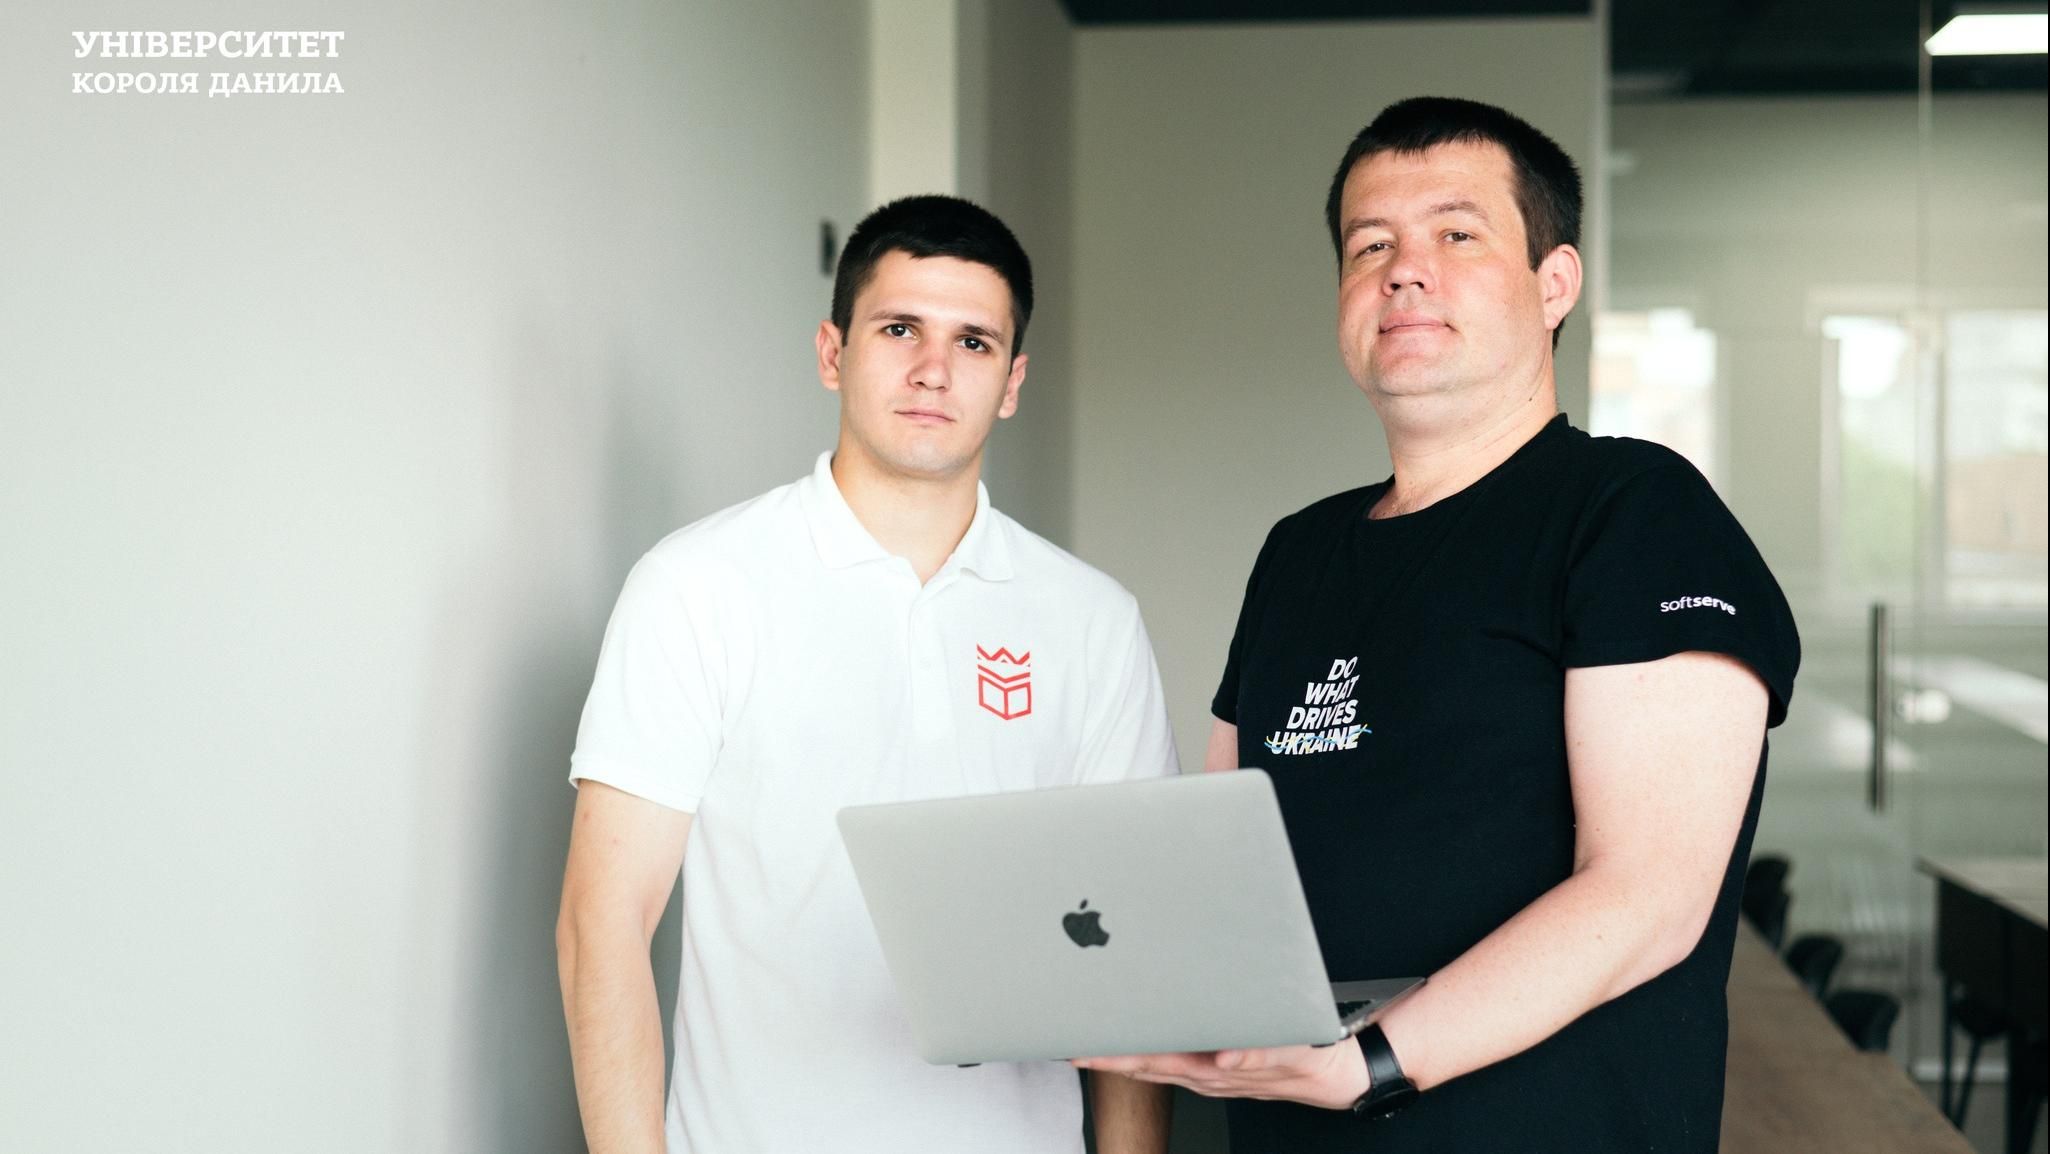 Студент Університету Короля Данила отримав можливість безкоштовної інтернатури в «SoftServe Ukraine»